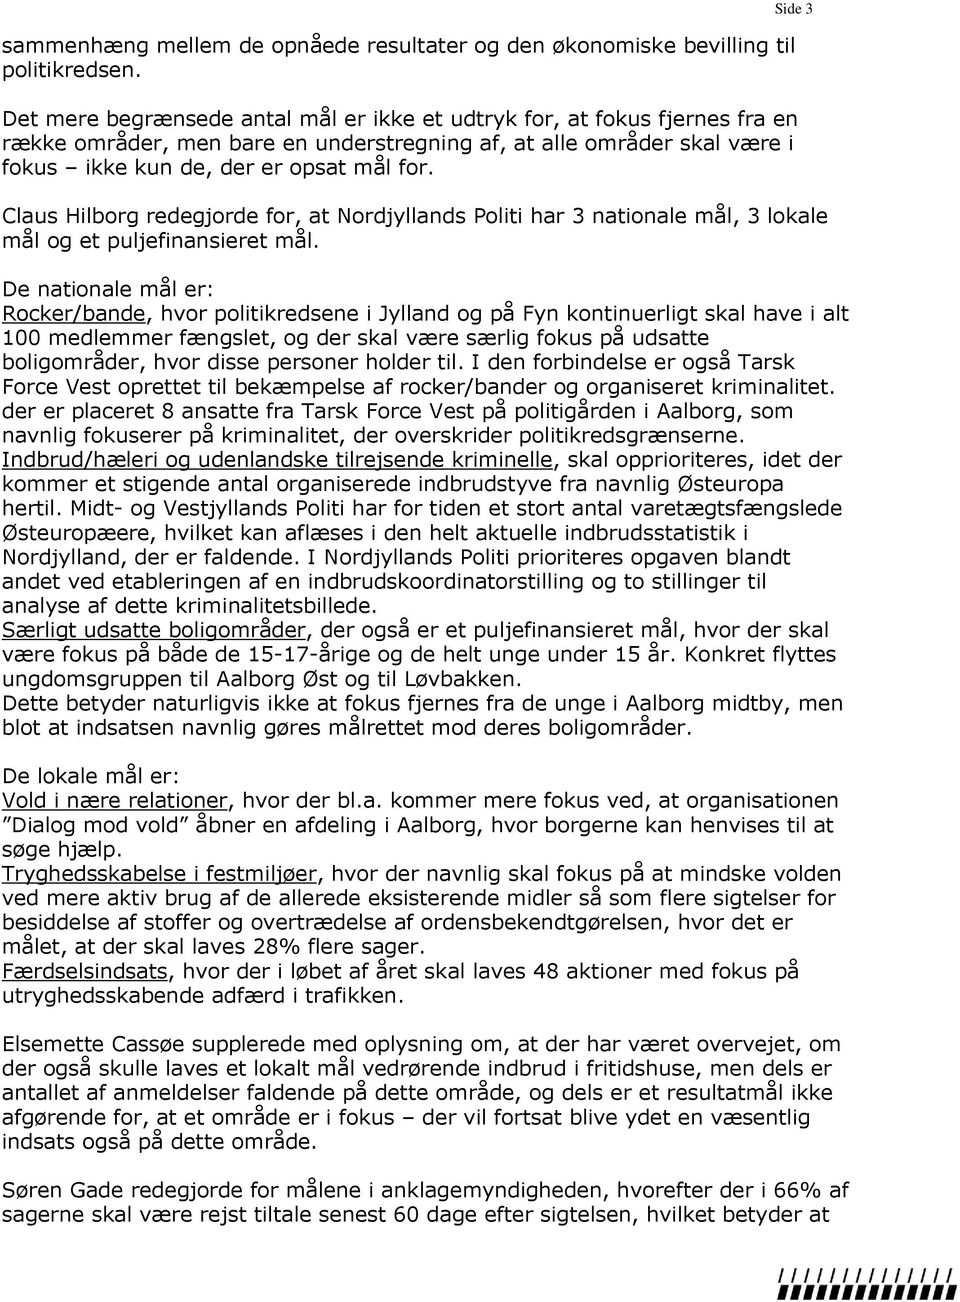 Side 3 Claus Hilborg redegjorde for, at Nordjyllands Politi har 3 nationale mål, 3 lokale mål og et puljefinansieret mål.